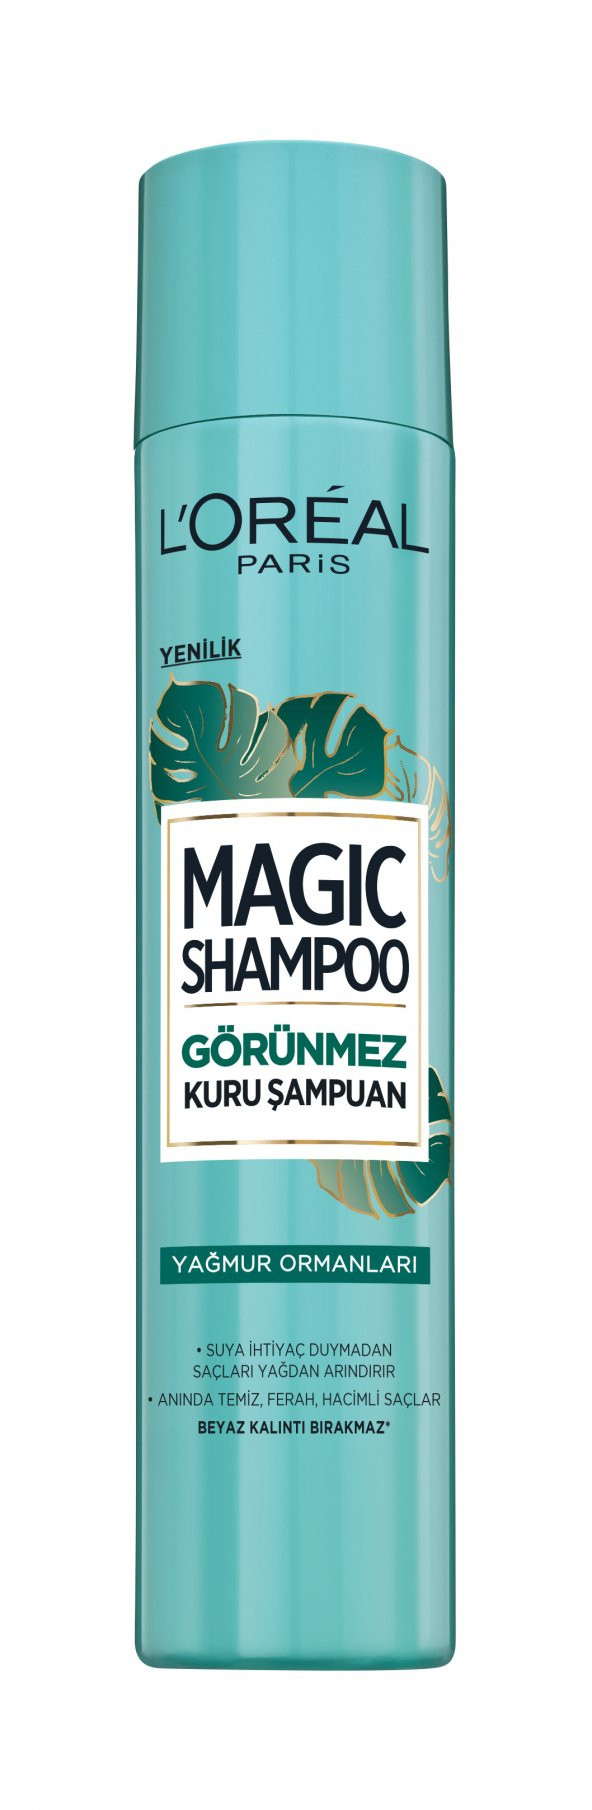 Magic Shampoo Yağmur Ormanları Kuru Şampuan 200ml